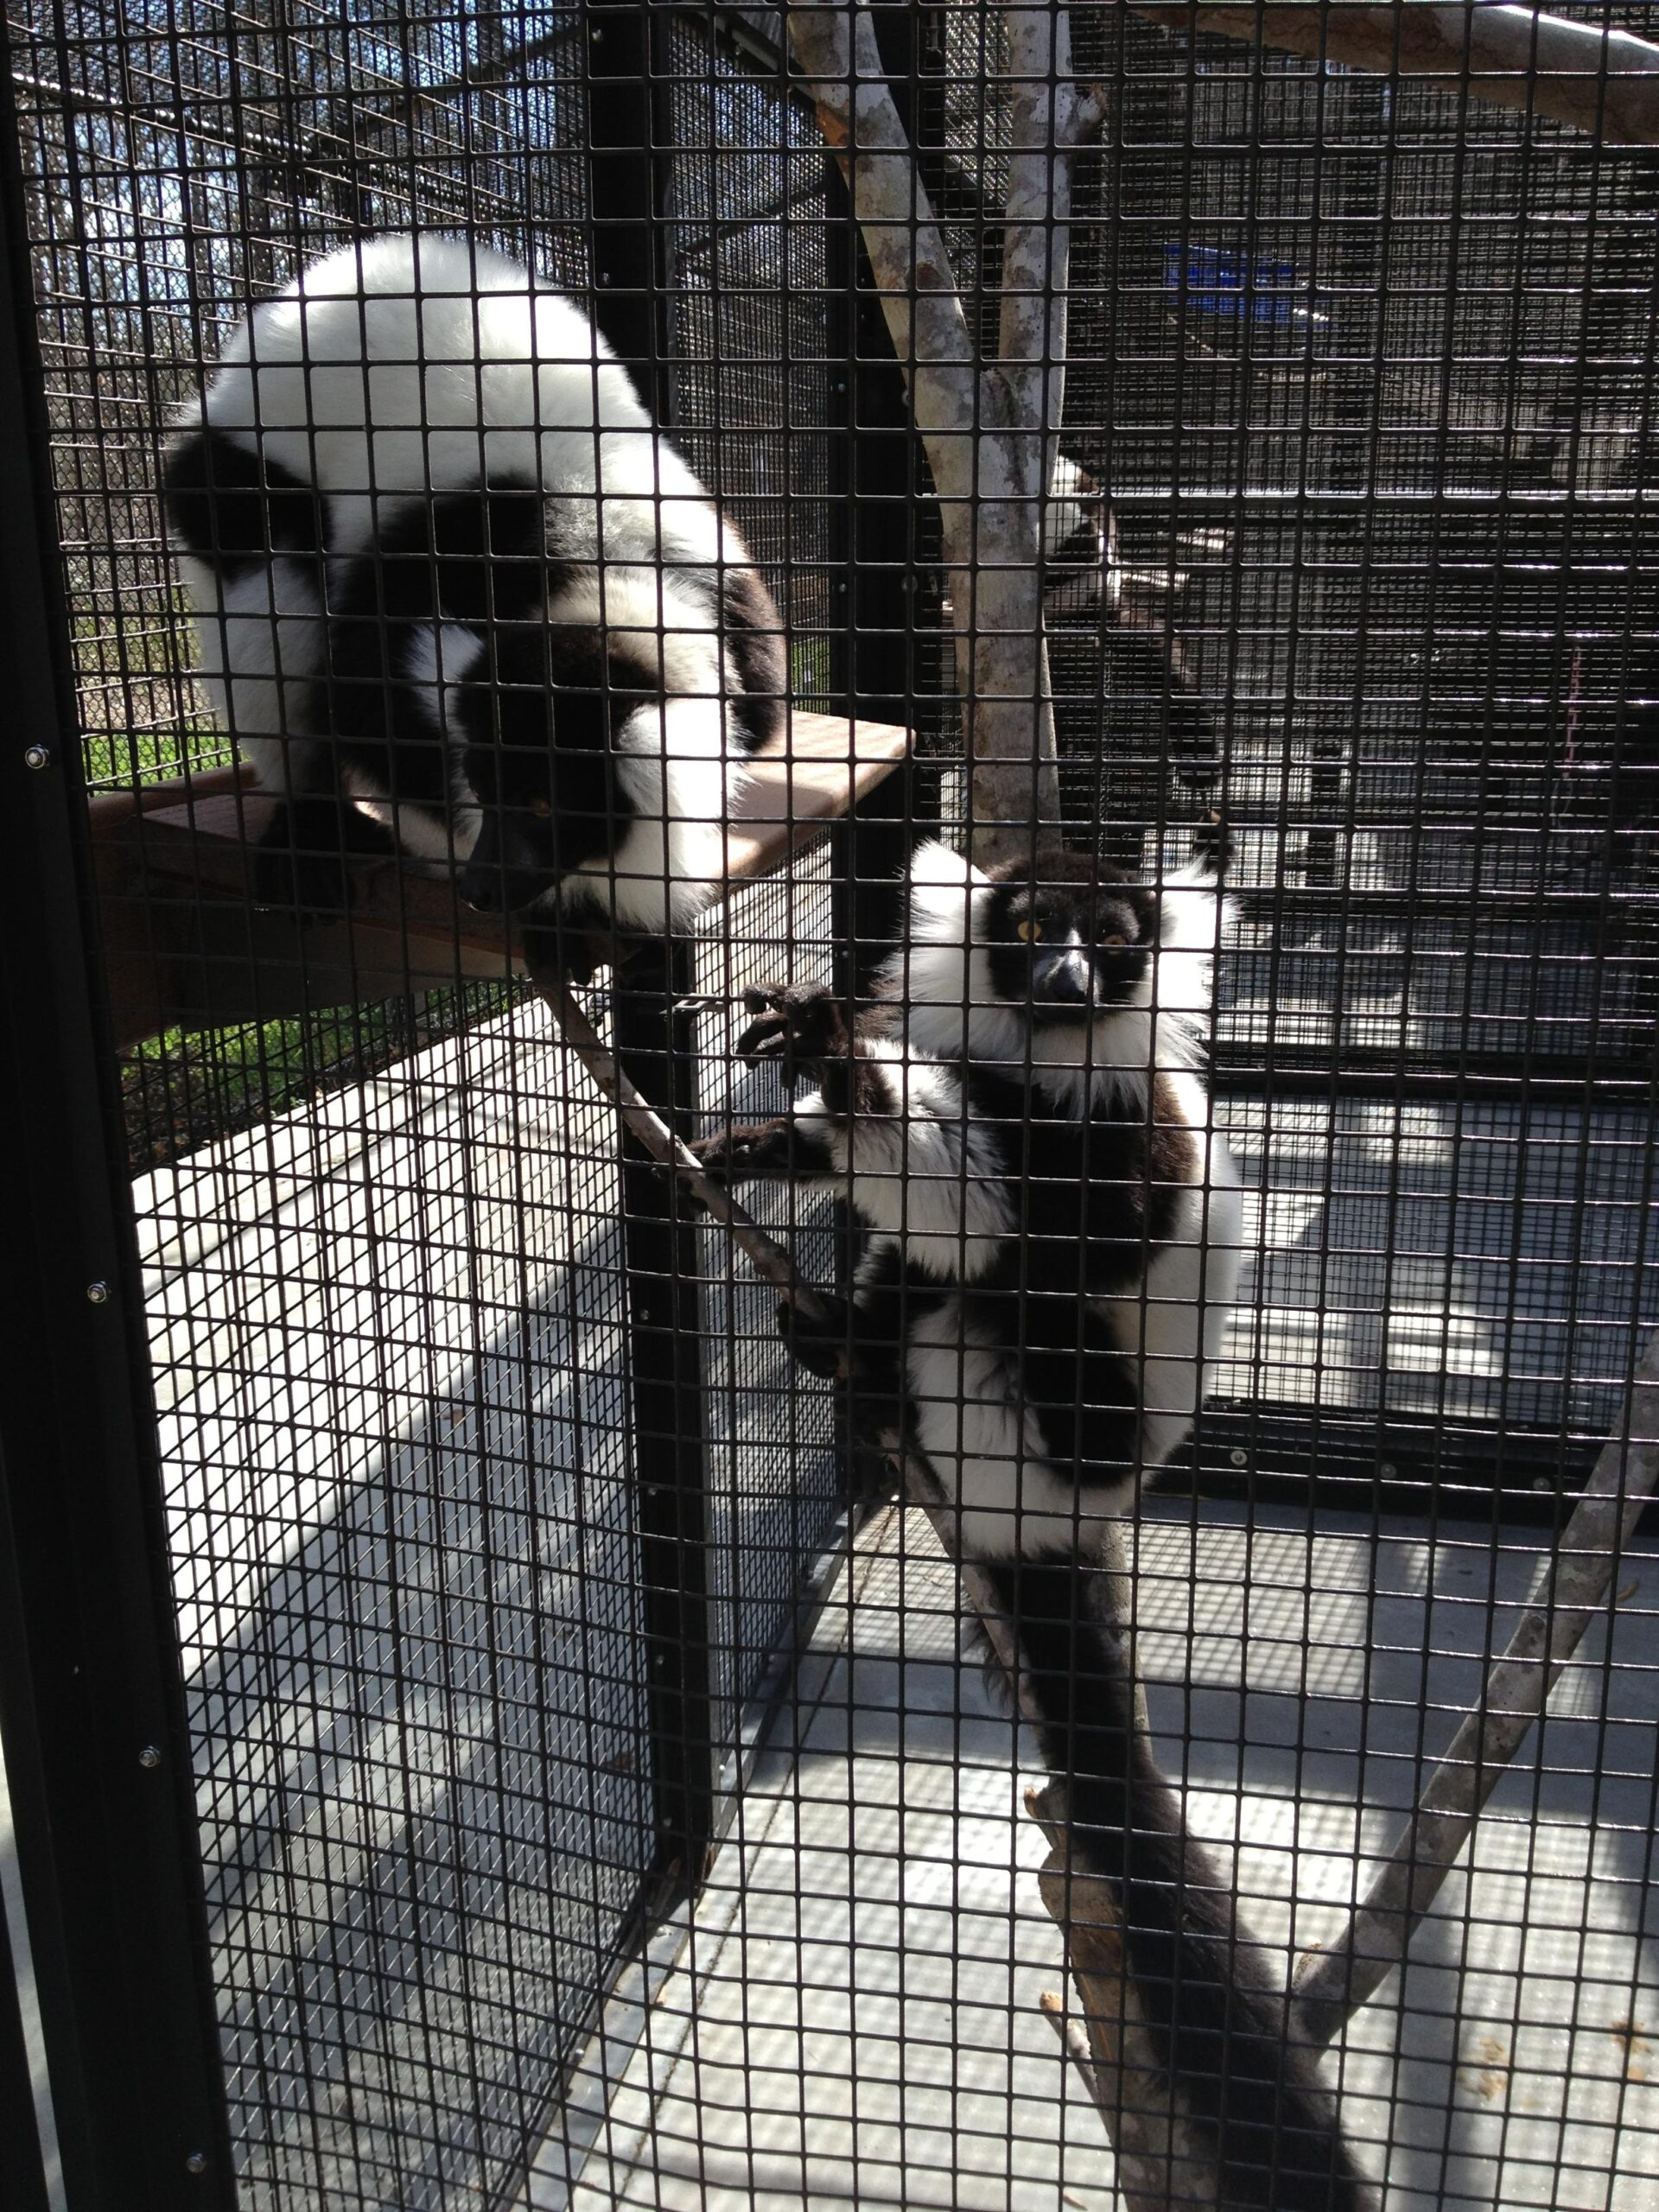 Lemur week 2